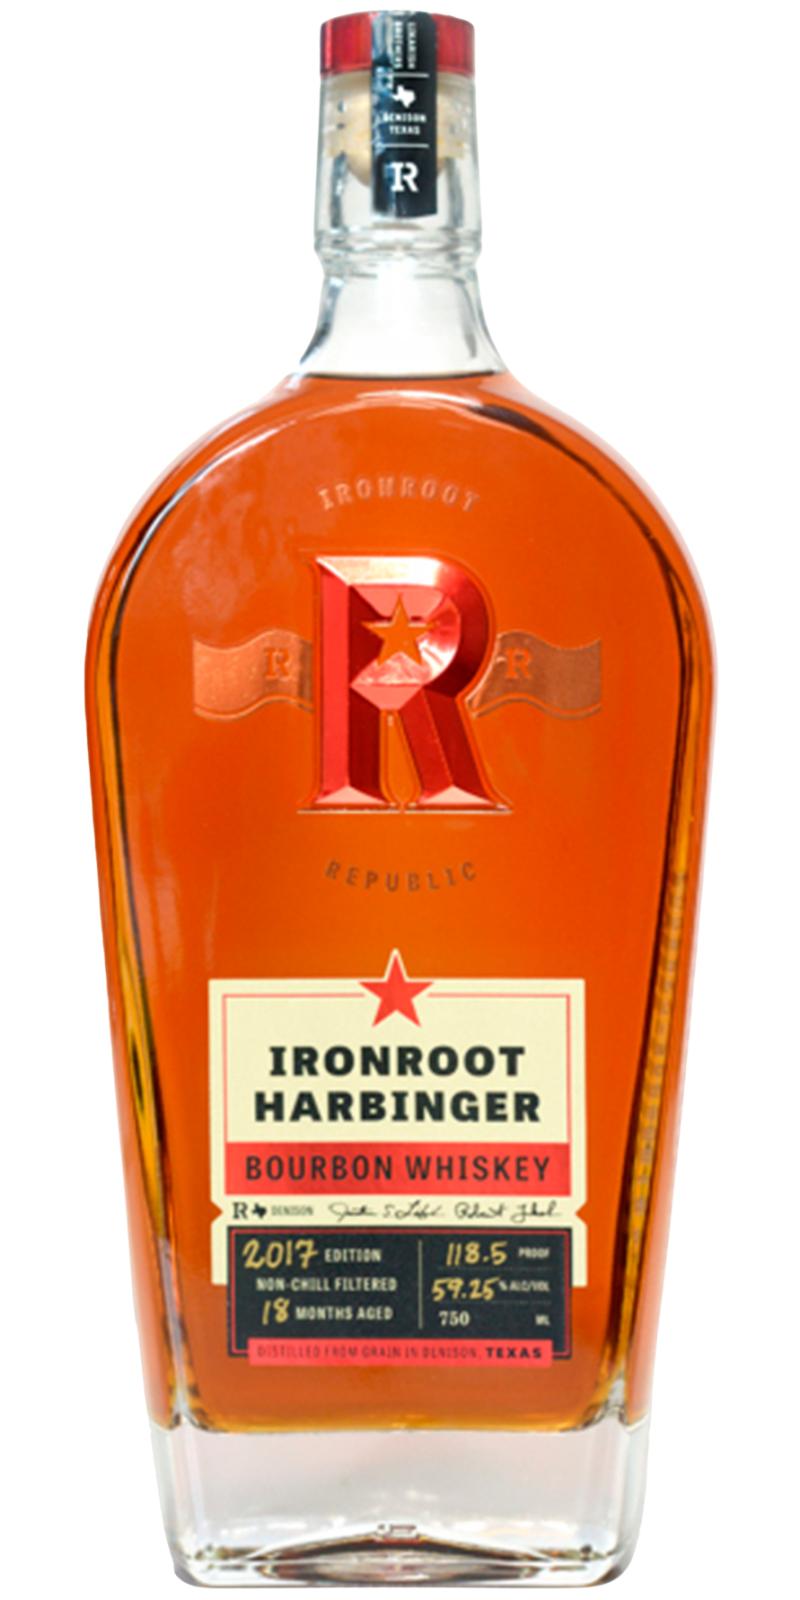 Ironroot Harbinger